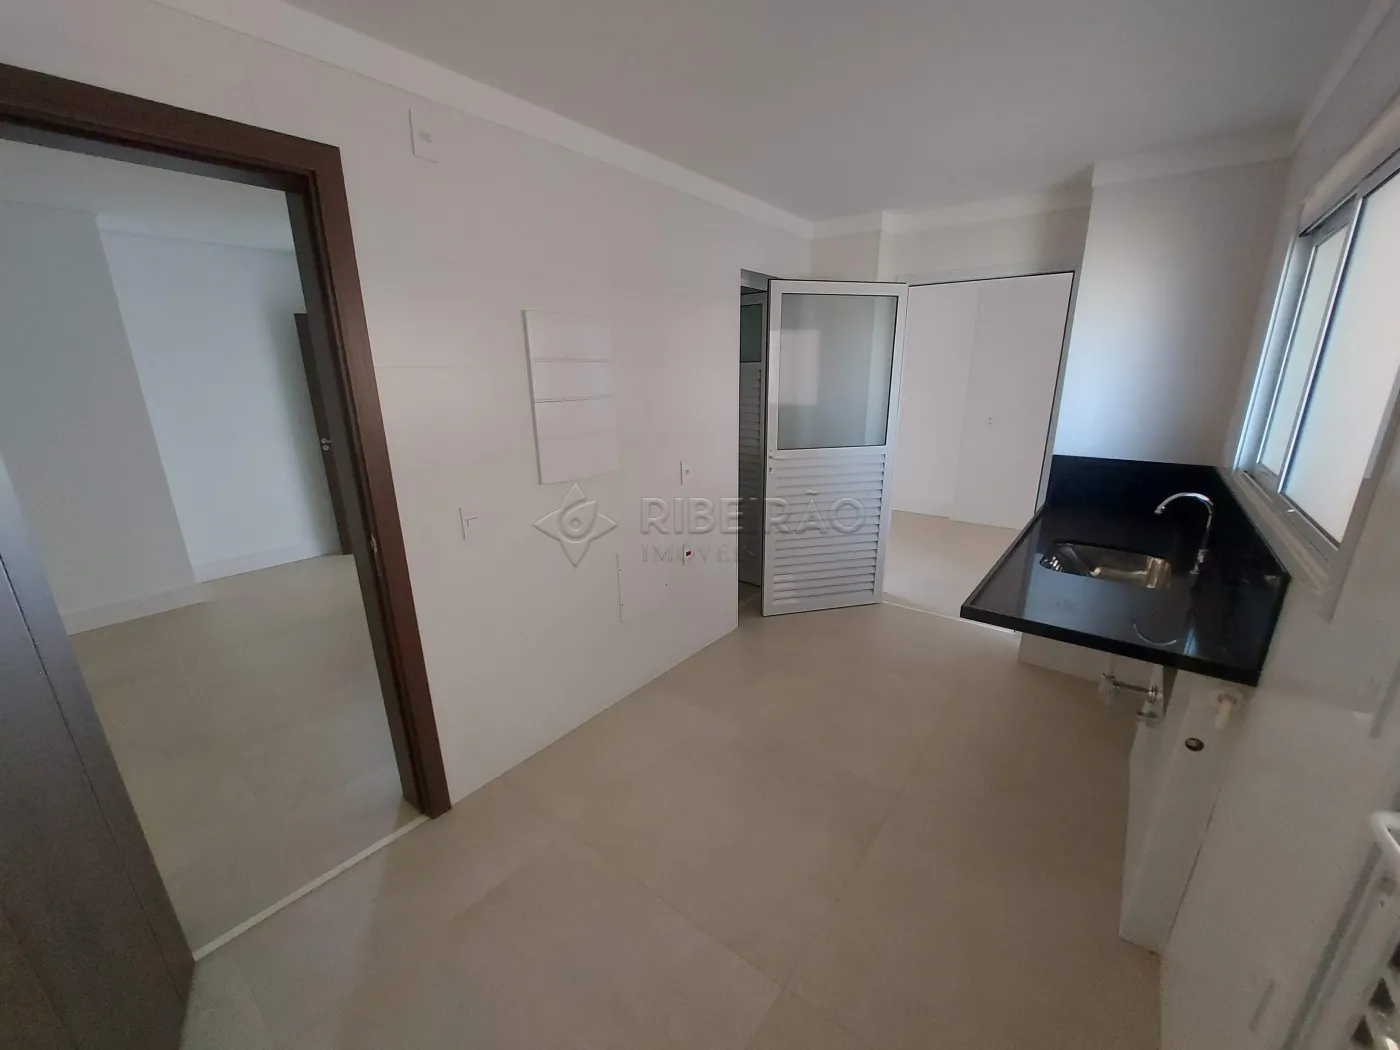 Comprar Apartamento / Padrão em Ribeirão Preto R$ 1.800.000,00 - Foto 13